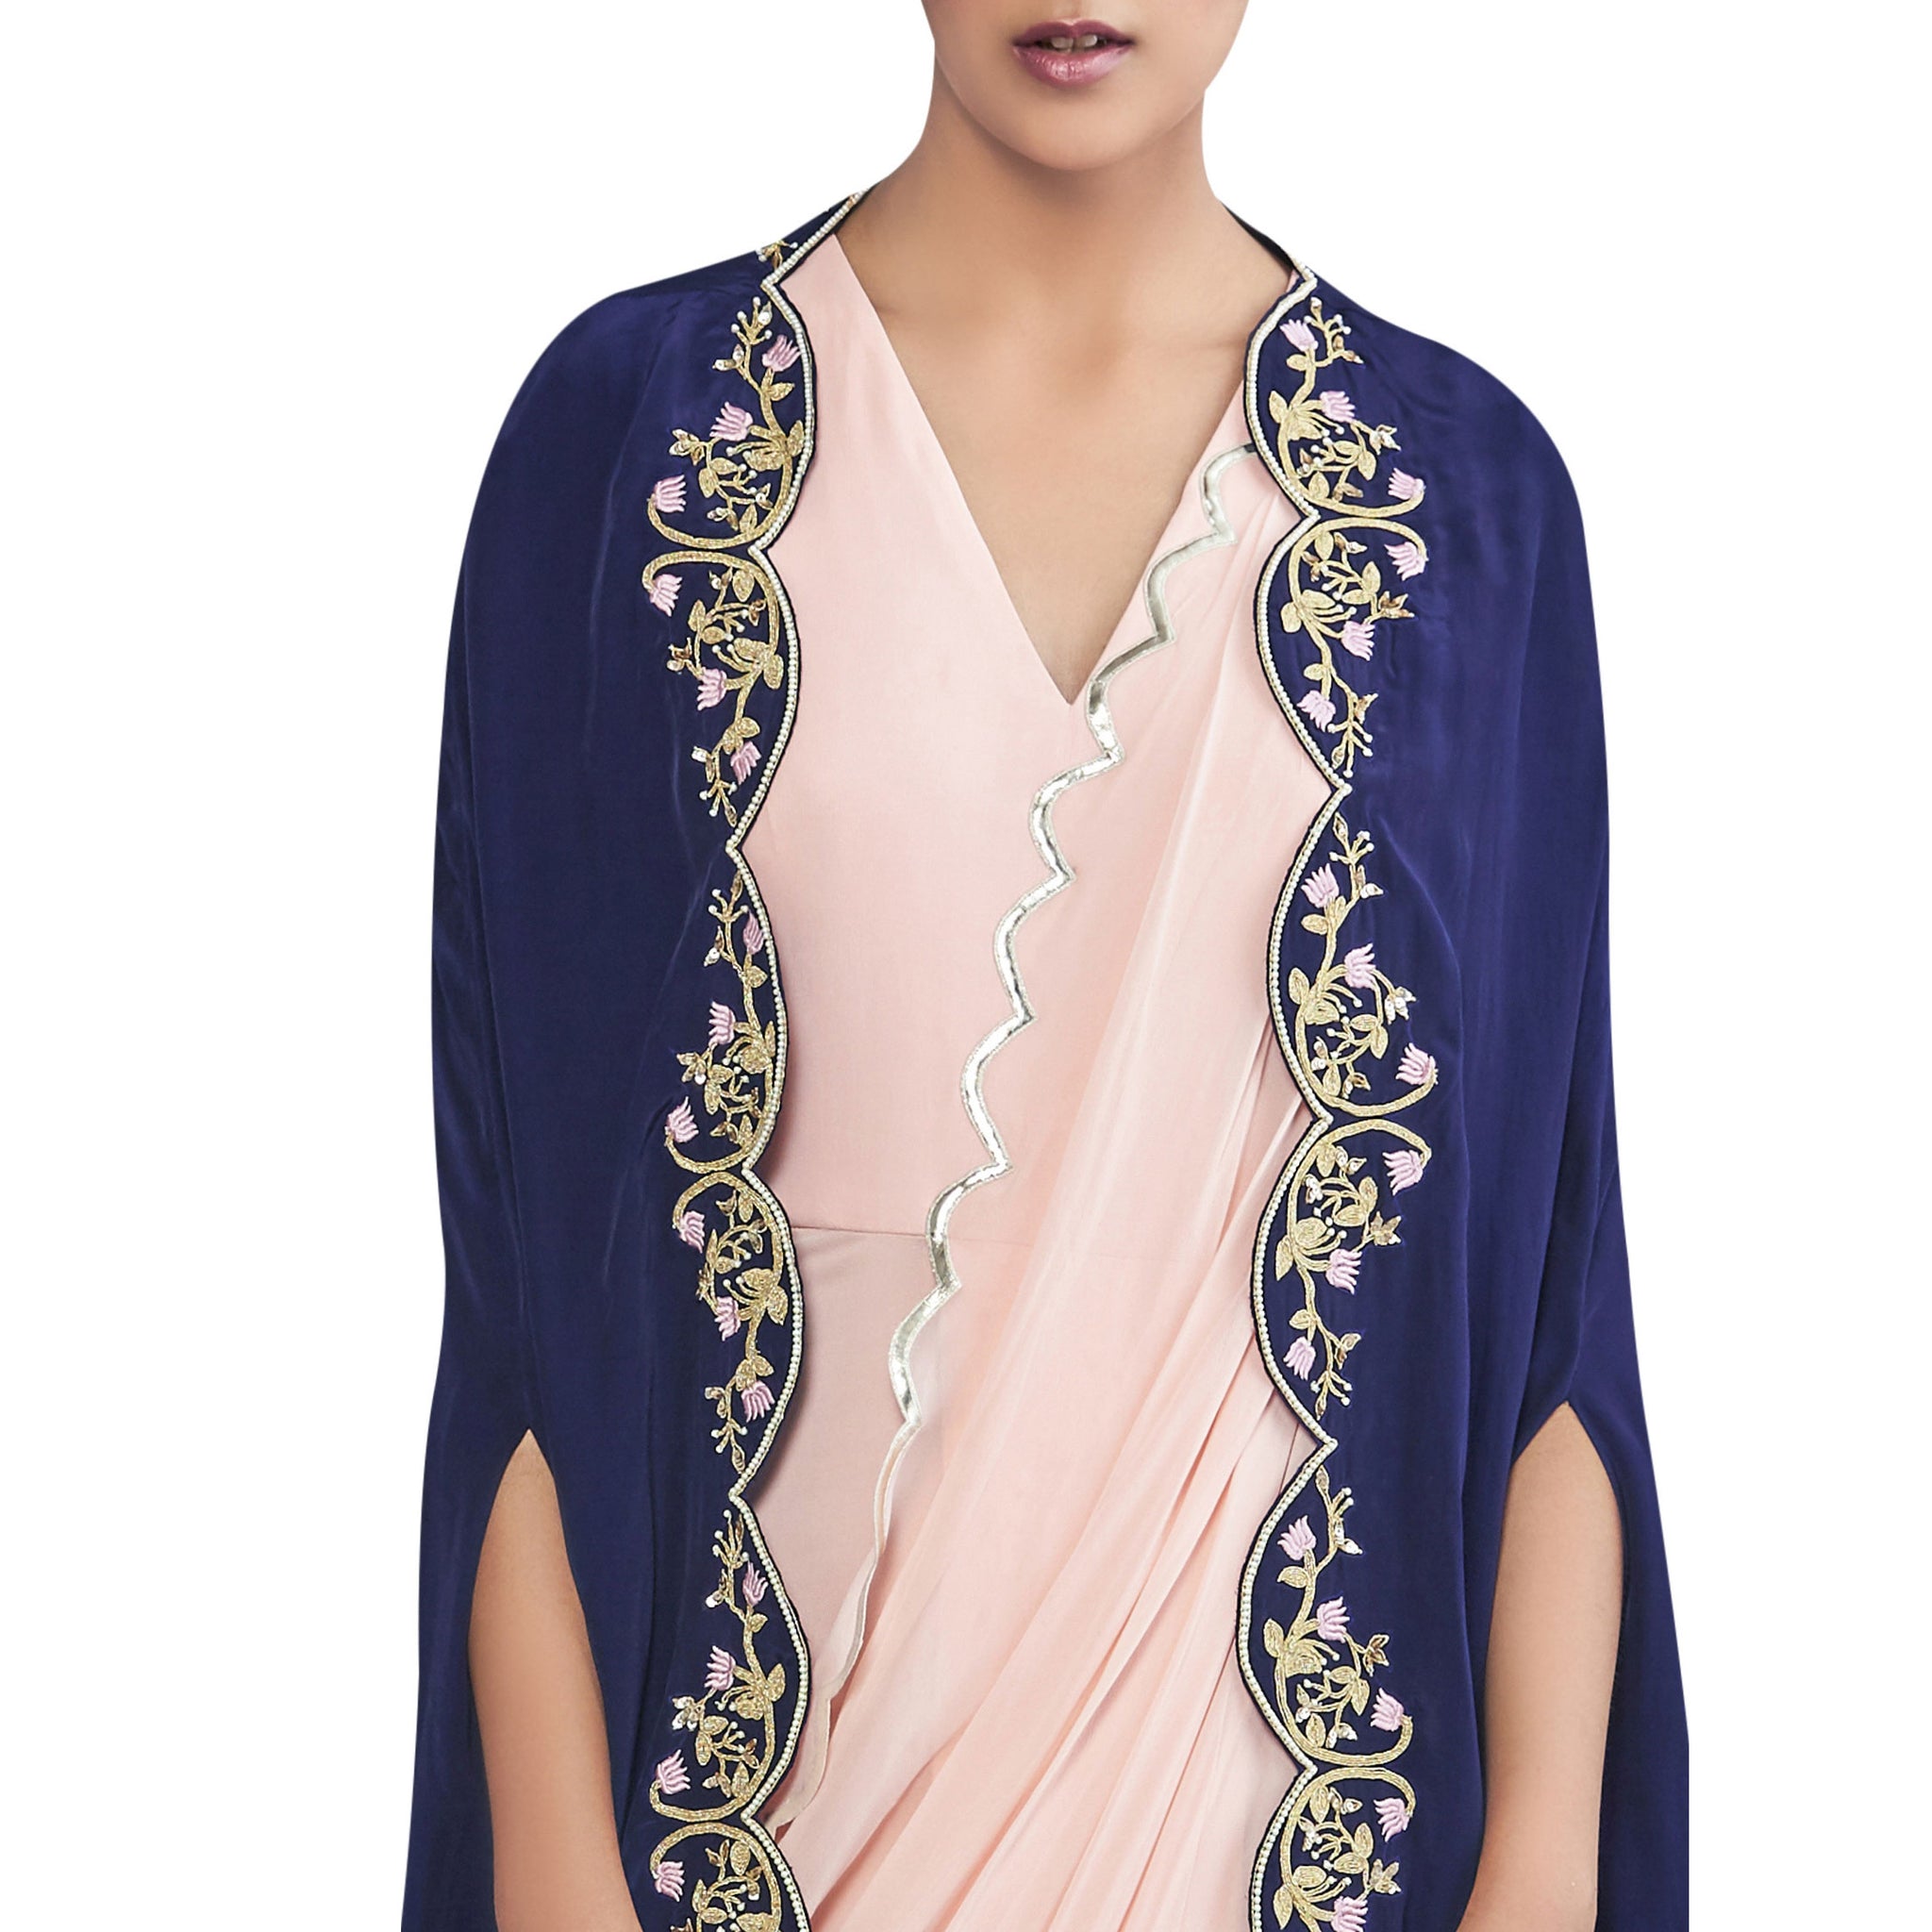 Embroidered Pre- Draped Sari with Cape